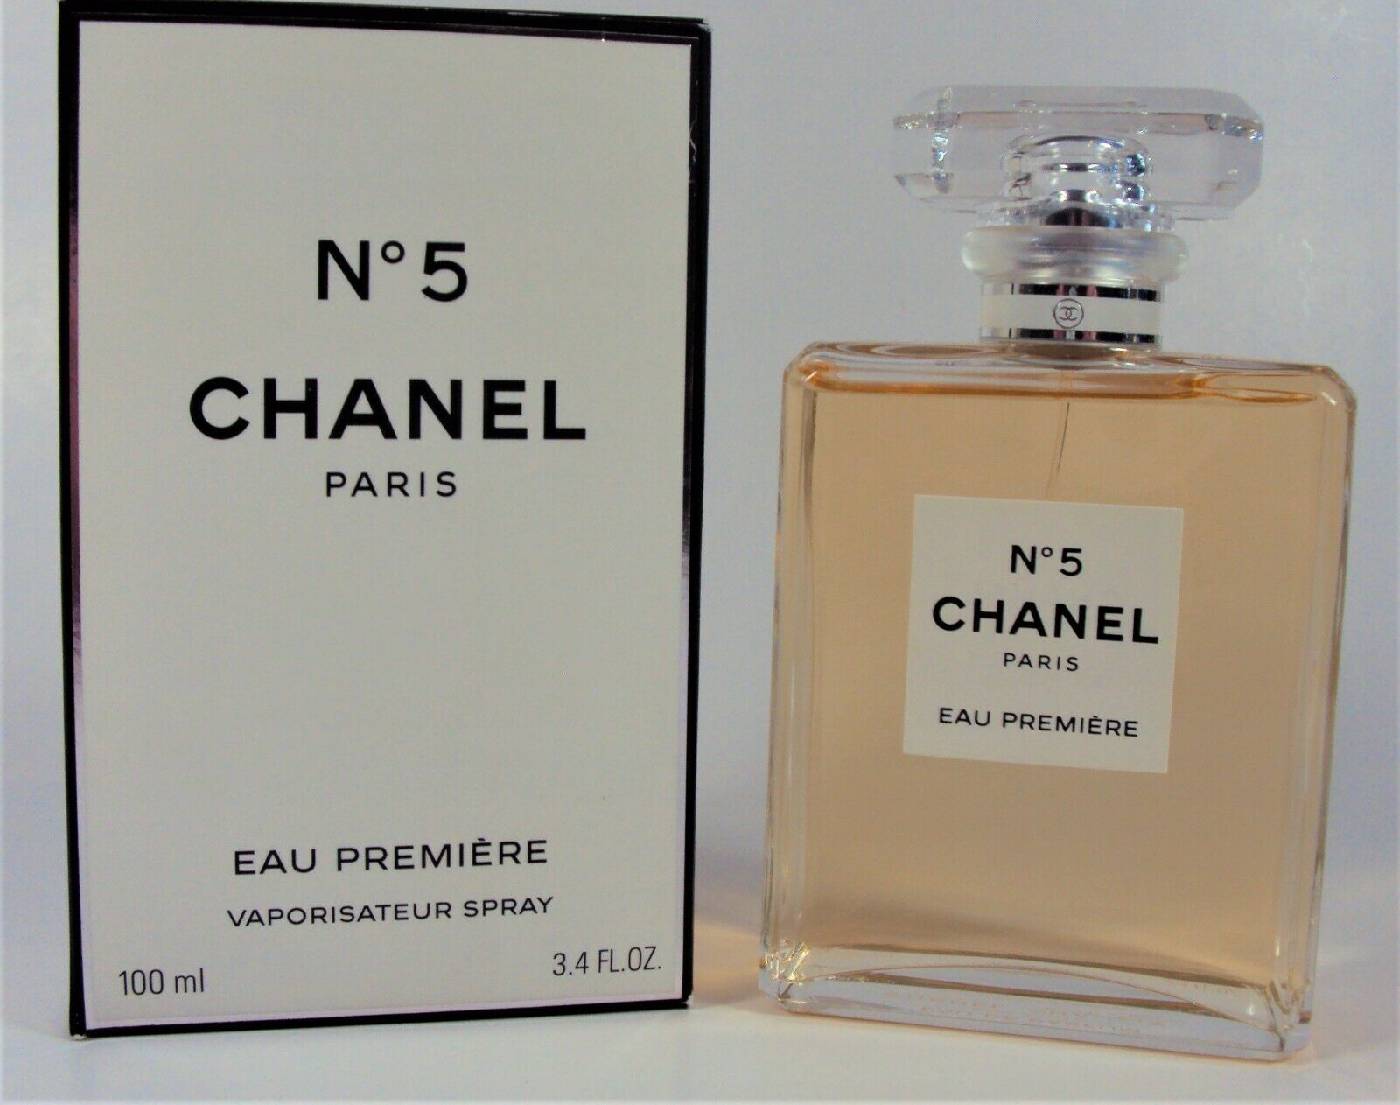 Nước hoa Chanel No5 Eau Premiere 100ml hương thơm dịu dàng nữ tính